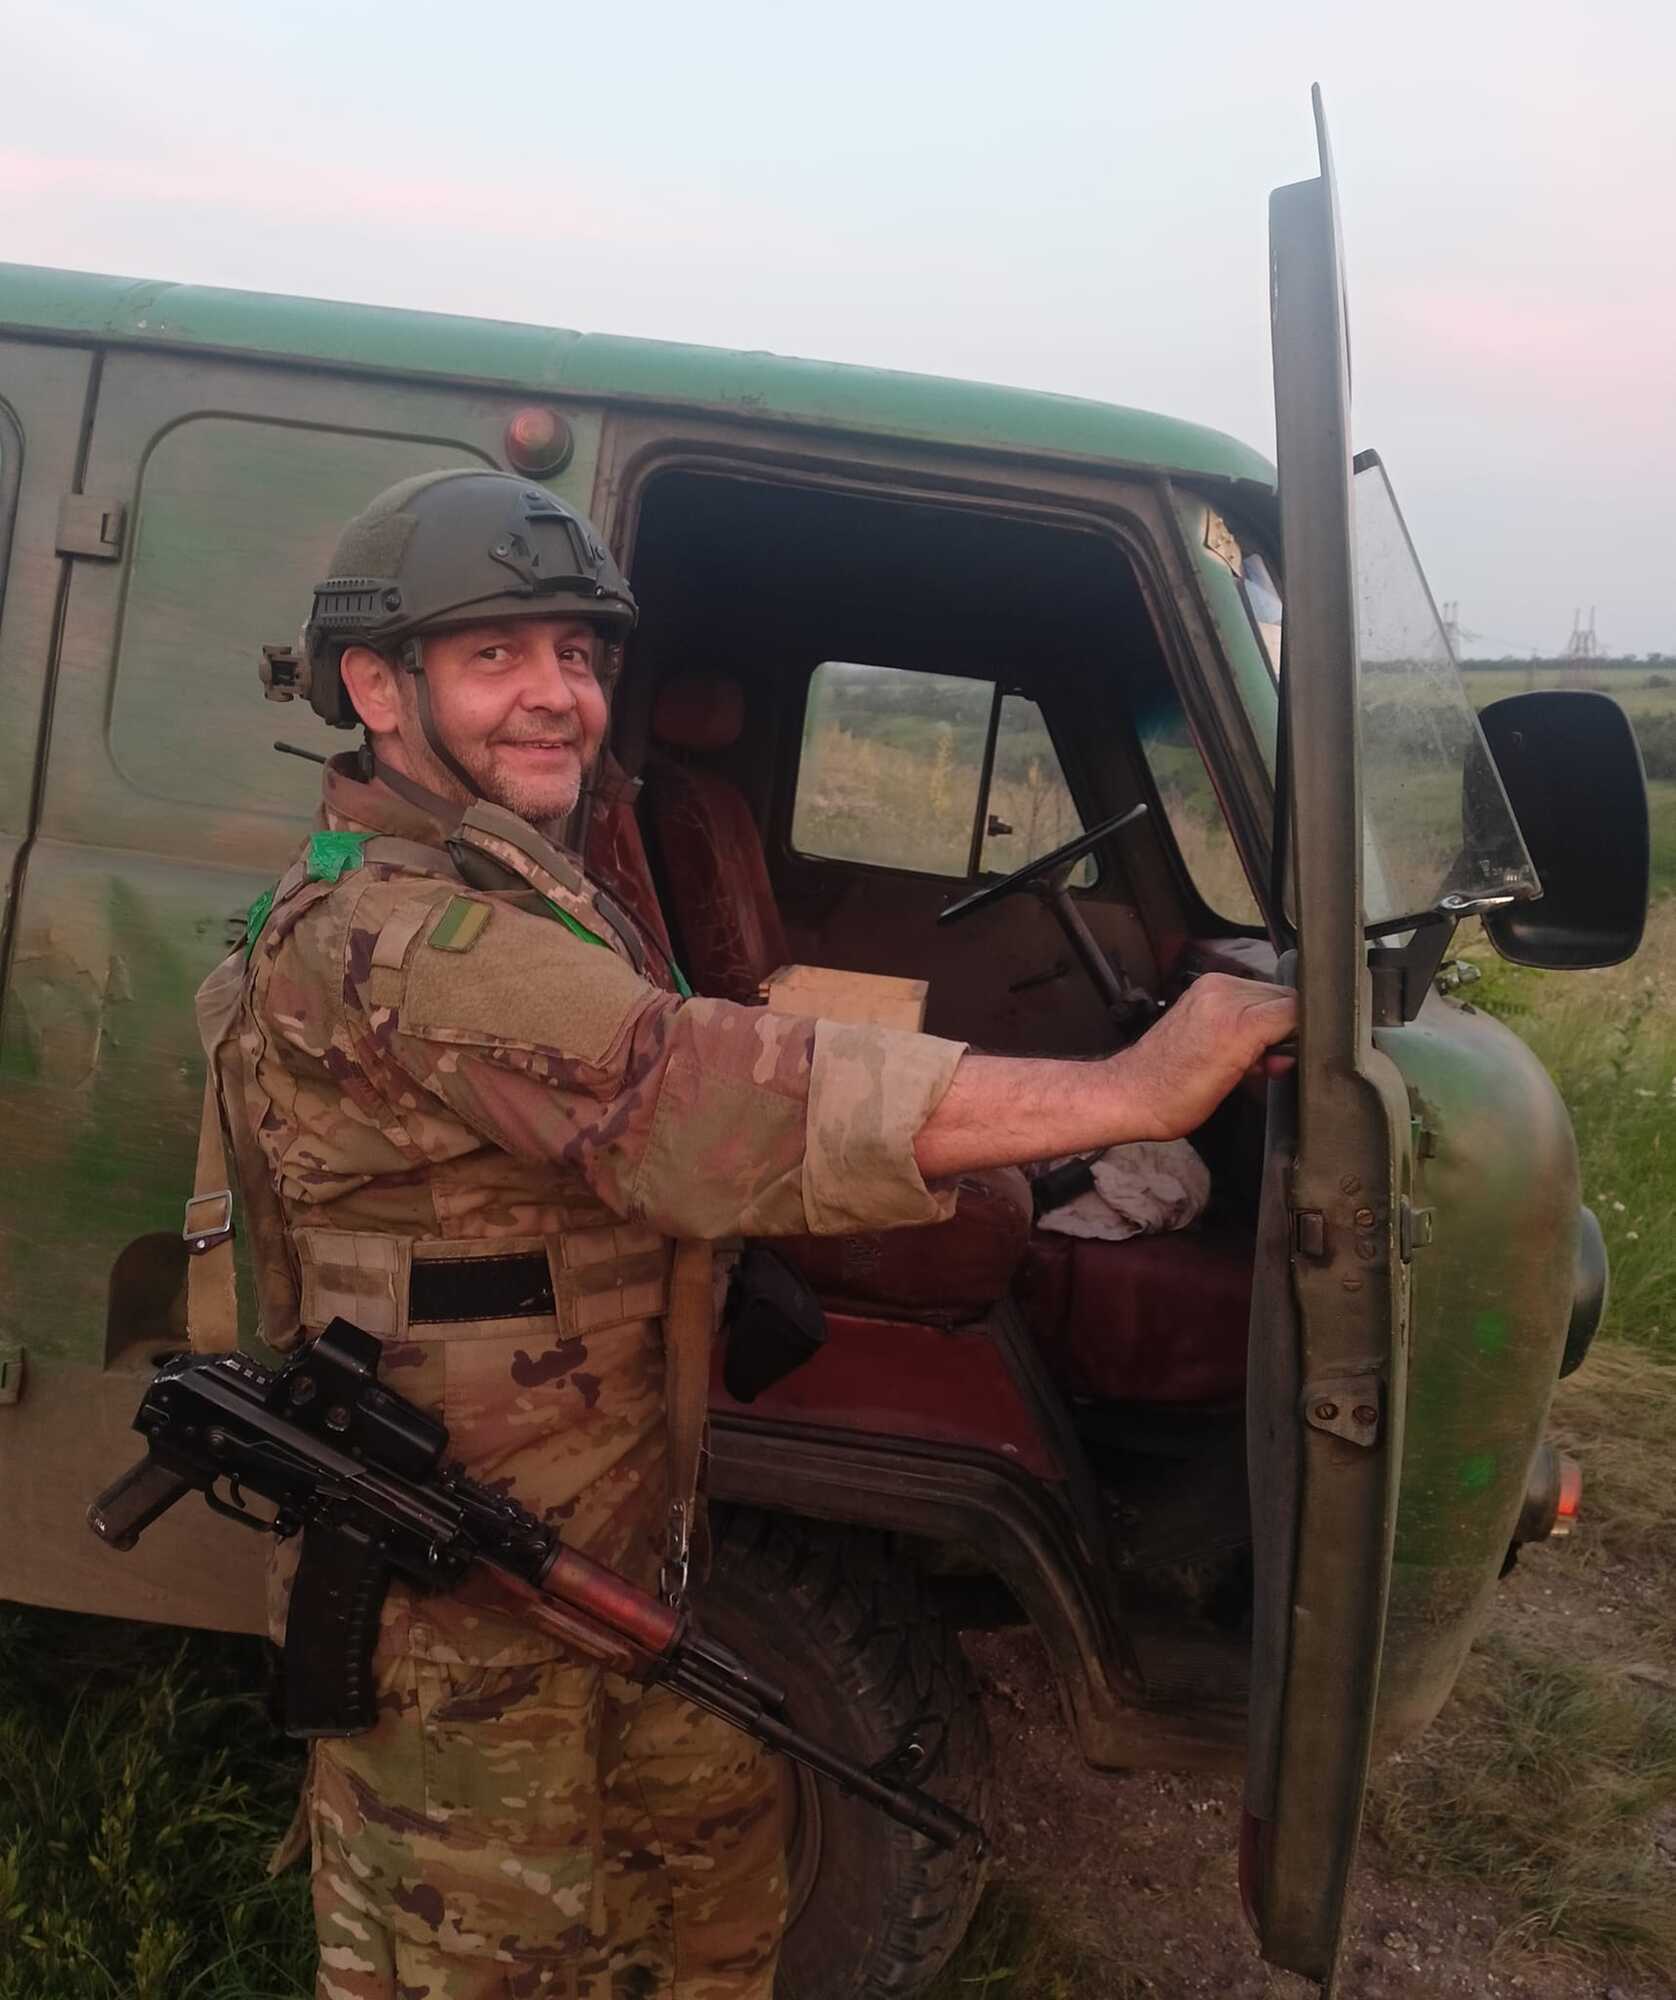 "Первым приходил на помощь": в боях за Украину погиб капитан стрелкового батальона из Одесской области. Фото